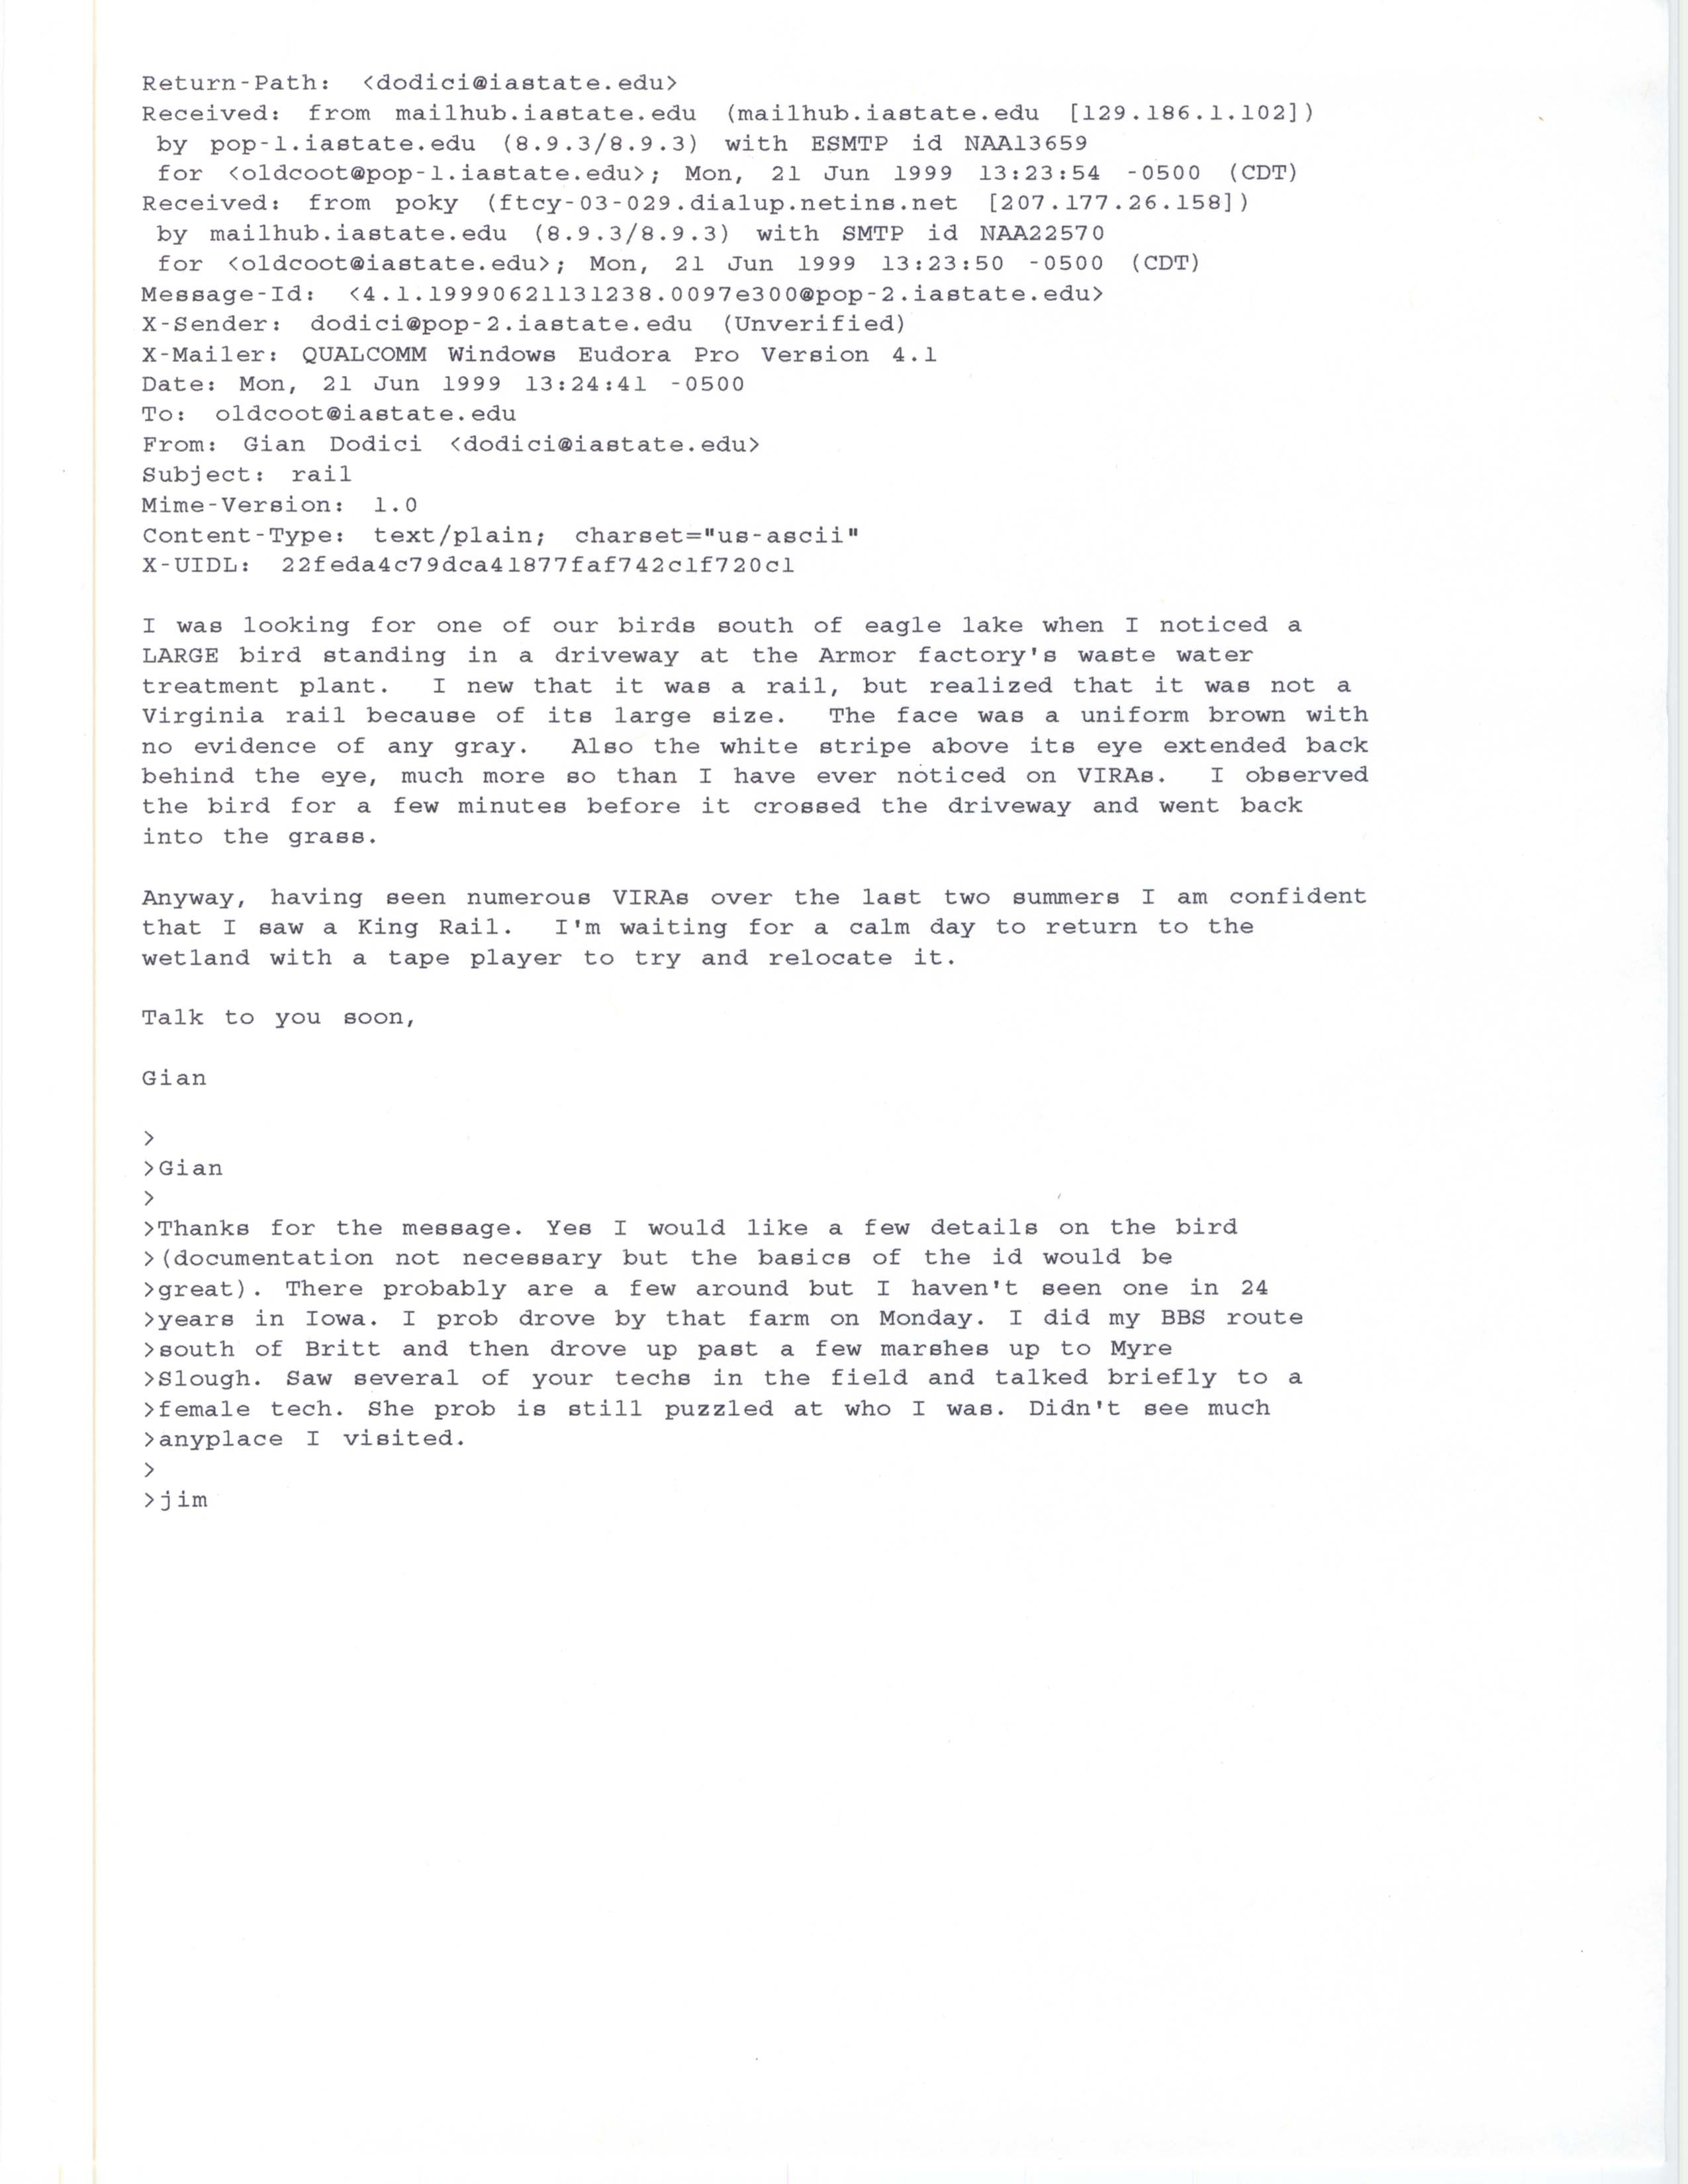 Gian Dodici email to Jim Dinsmore regarding King Rail details, June 20, 1999